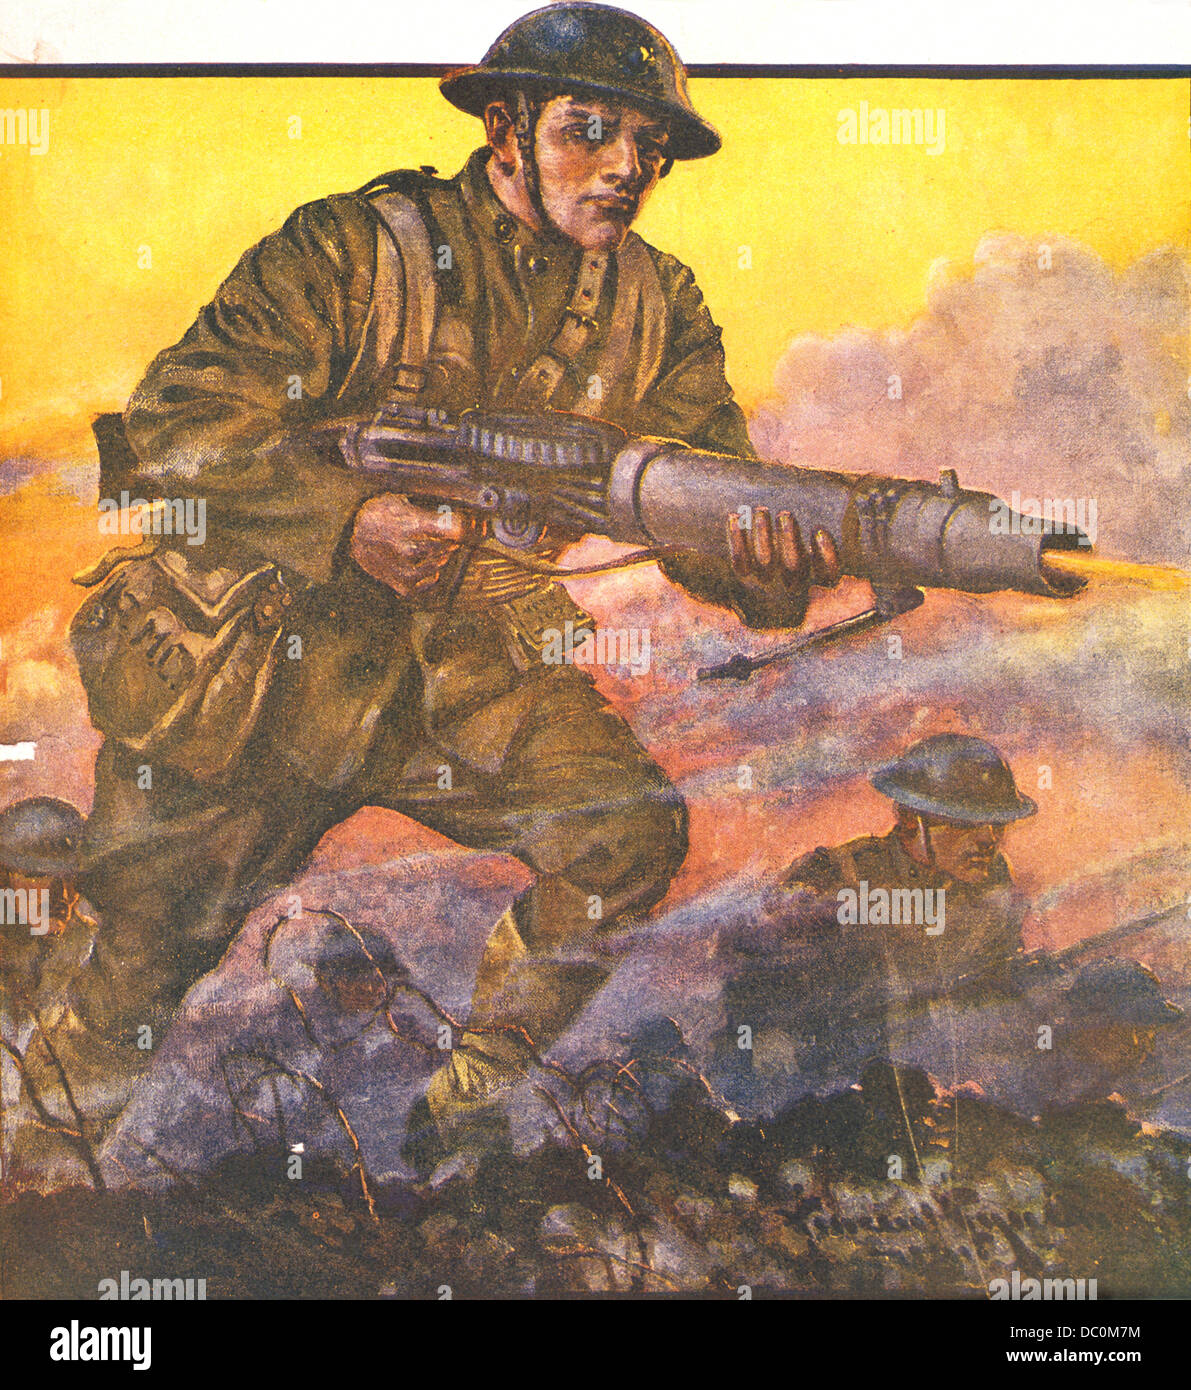 Peinture DE SOLDAT AVEC MACHINE GUN WW1 1918 intitulé L'HOMME DERRIÈRE L'ARME DES SOLDATS DE LA PREMIÈRE GUERRE MONDIALE Banque D'Images